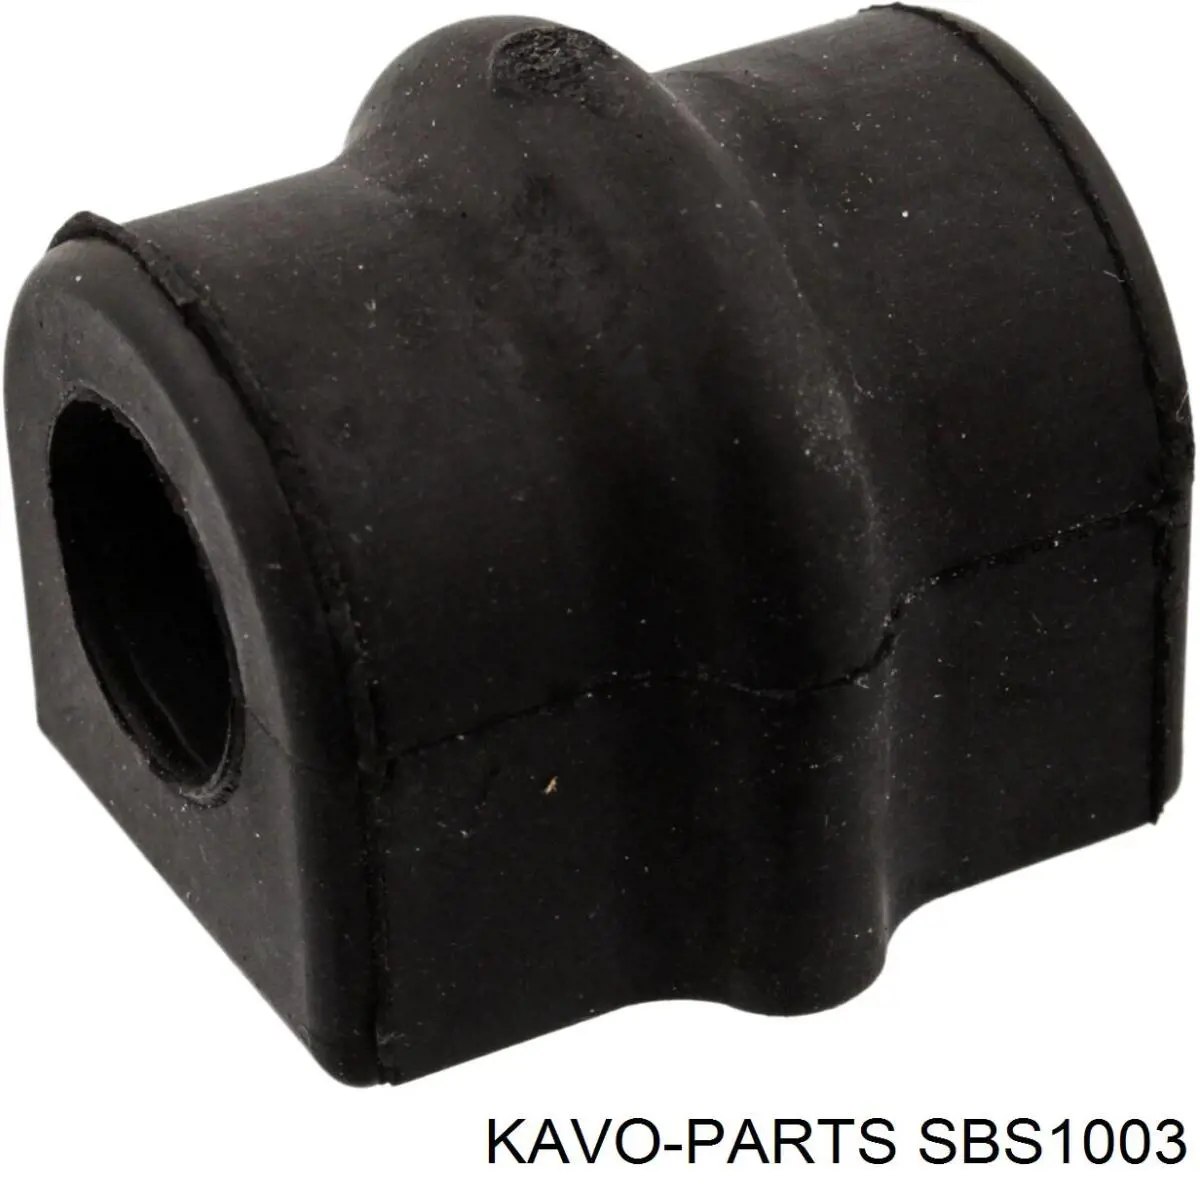 SBS-1003 Kavo Parts casquillo de barra estabilizadora delantera